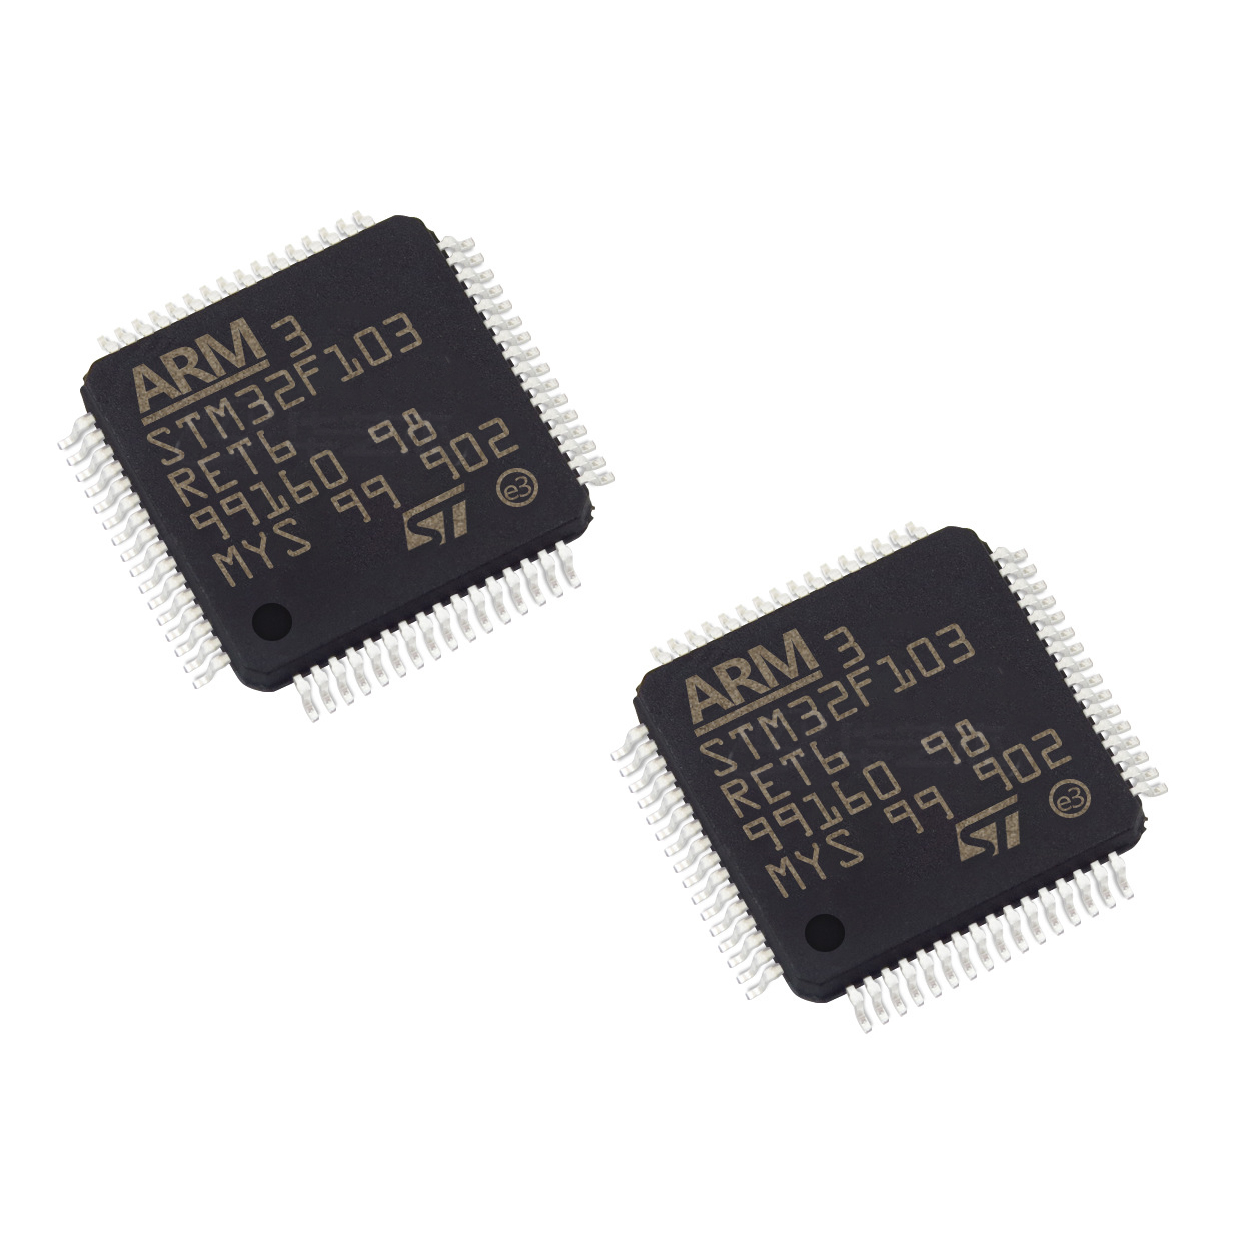 میکروکنترلر اس تی مایکروالکترونیکس مدل STM32F103 بسته 2 عددی